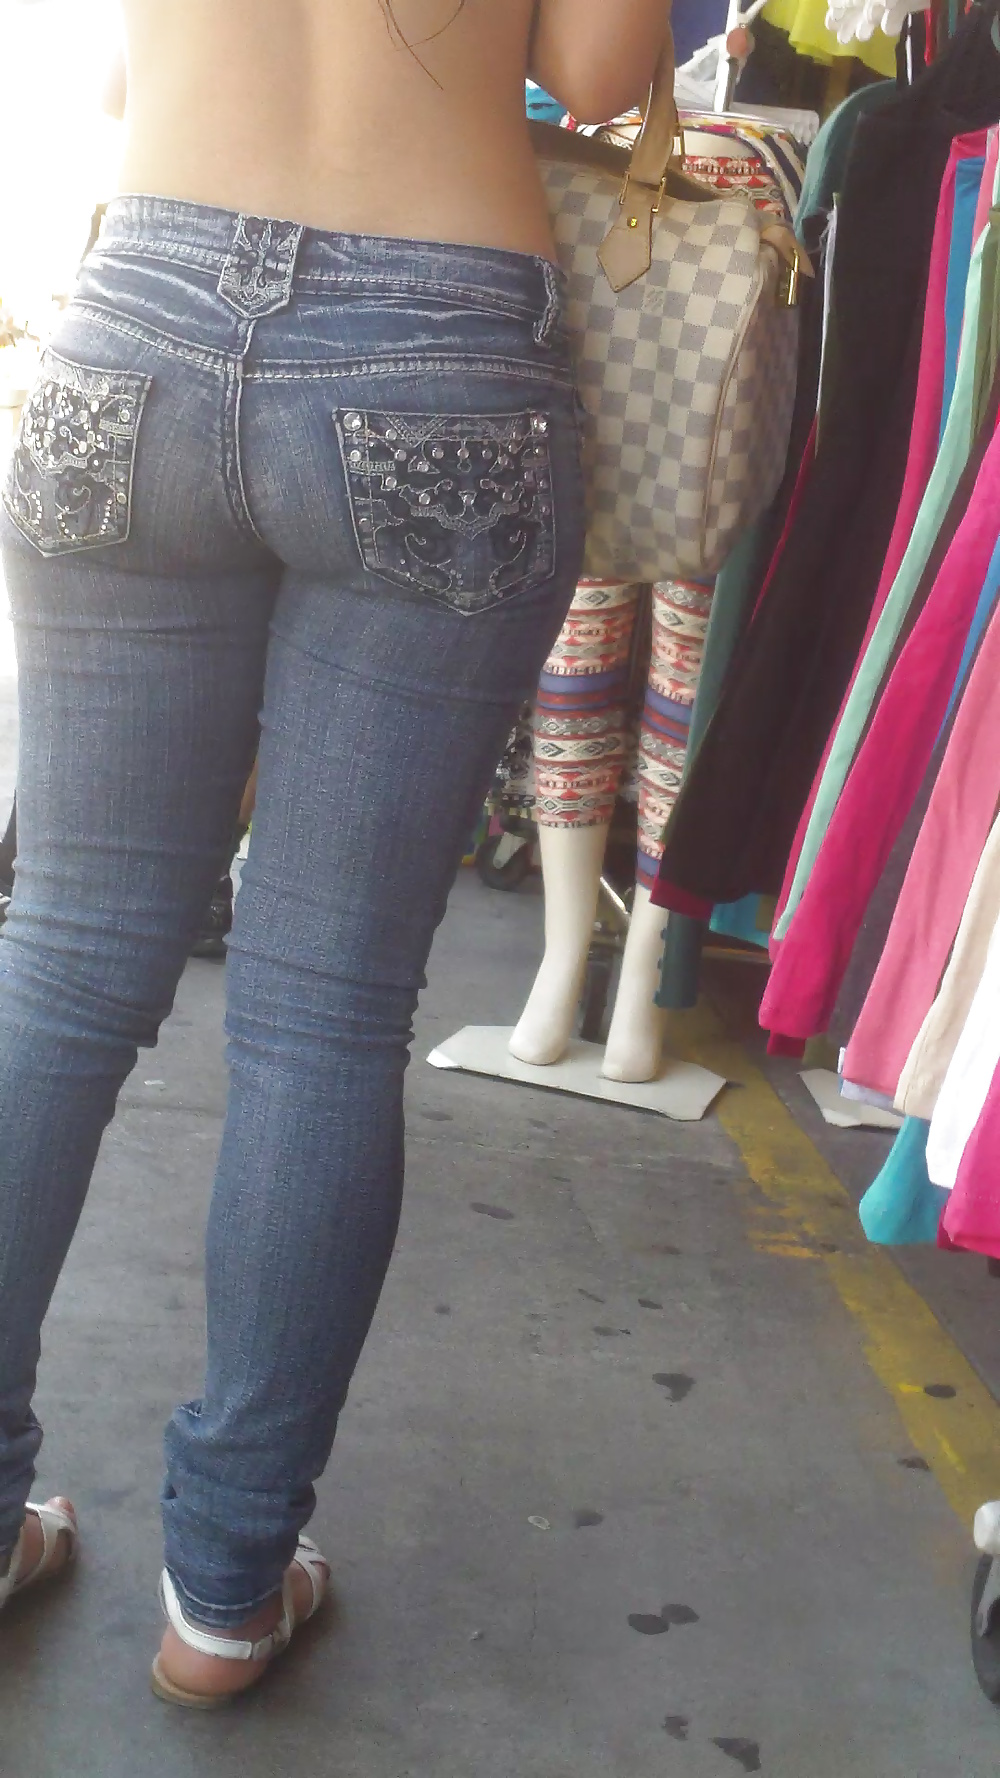 Popular teen girls ass & butt in jeans part 4  #26743415